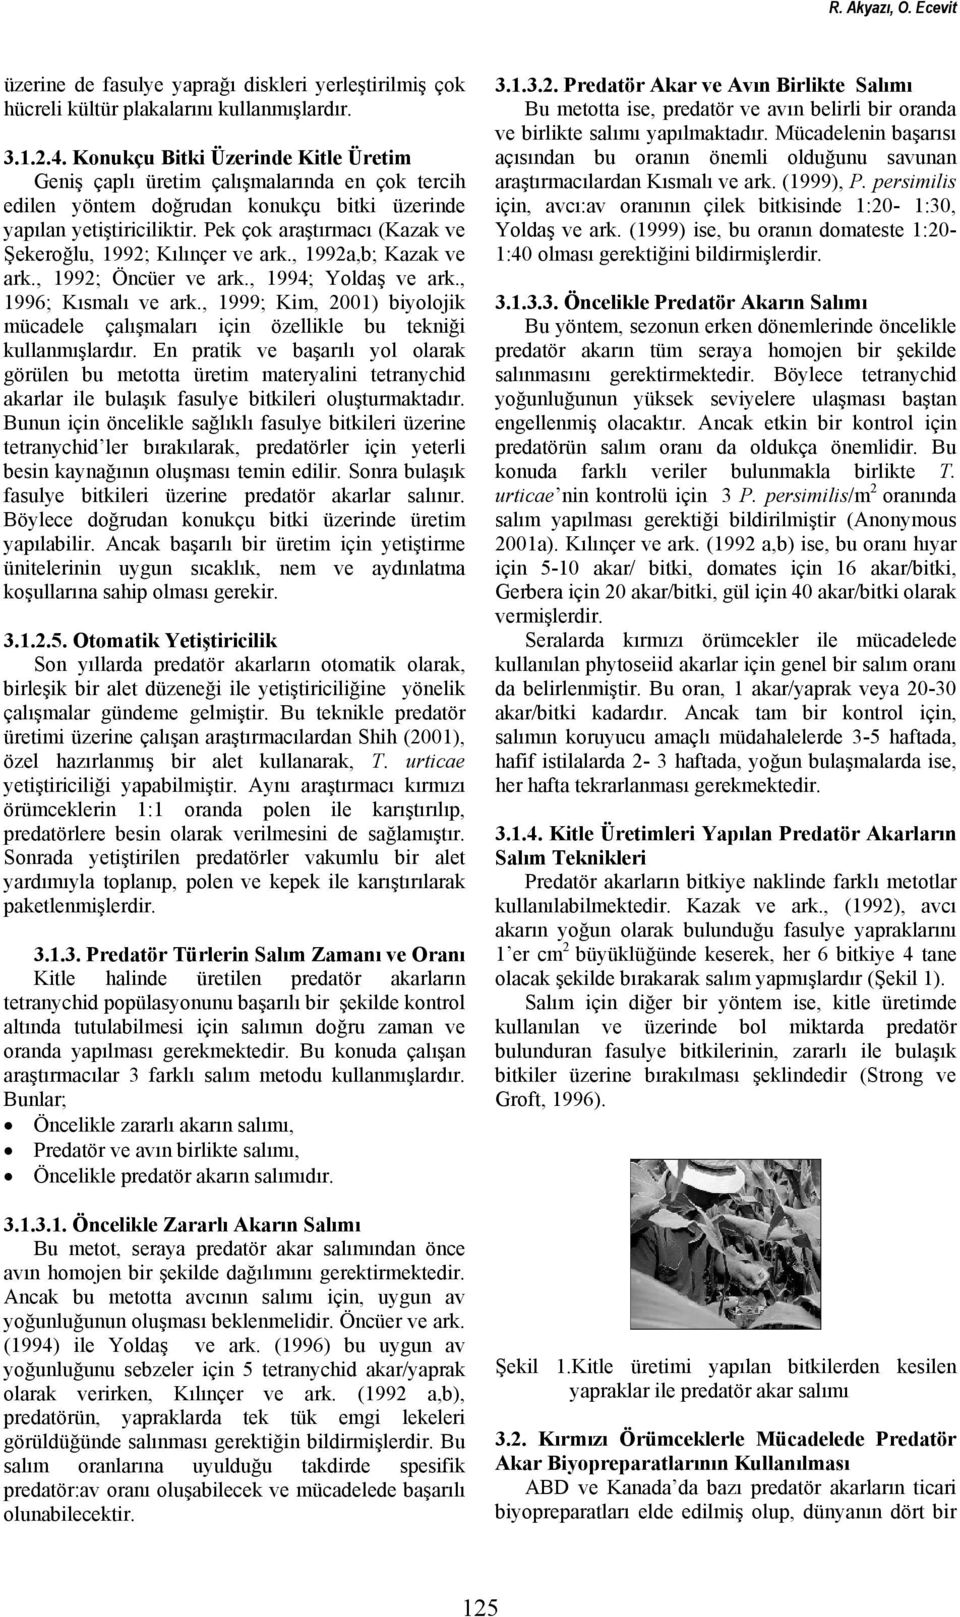 Pek çok araştırmacı (Kazak ve Şekeroğlu, 1992; Kılınçer ve ark., 1992a,b; Kazak ve ark., 1992; Öncüer ve ark., 1994; Yoldaş ve ark., 1996; Kısmalı ve ark.